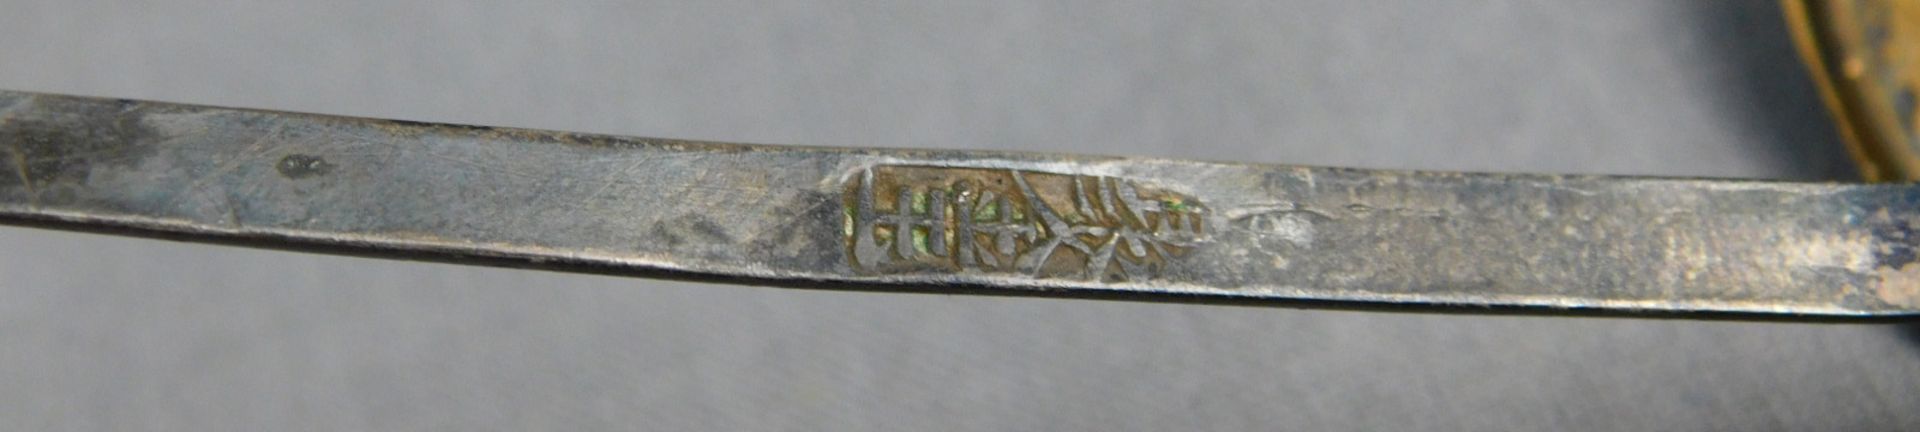 Weihrauchbrenner aus Bronze und 4 Haarnadeln mit Emaile. - Image 23 of 30